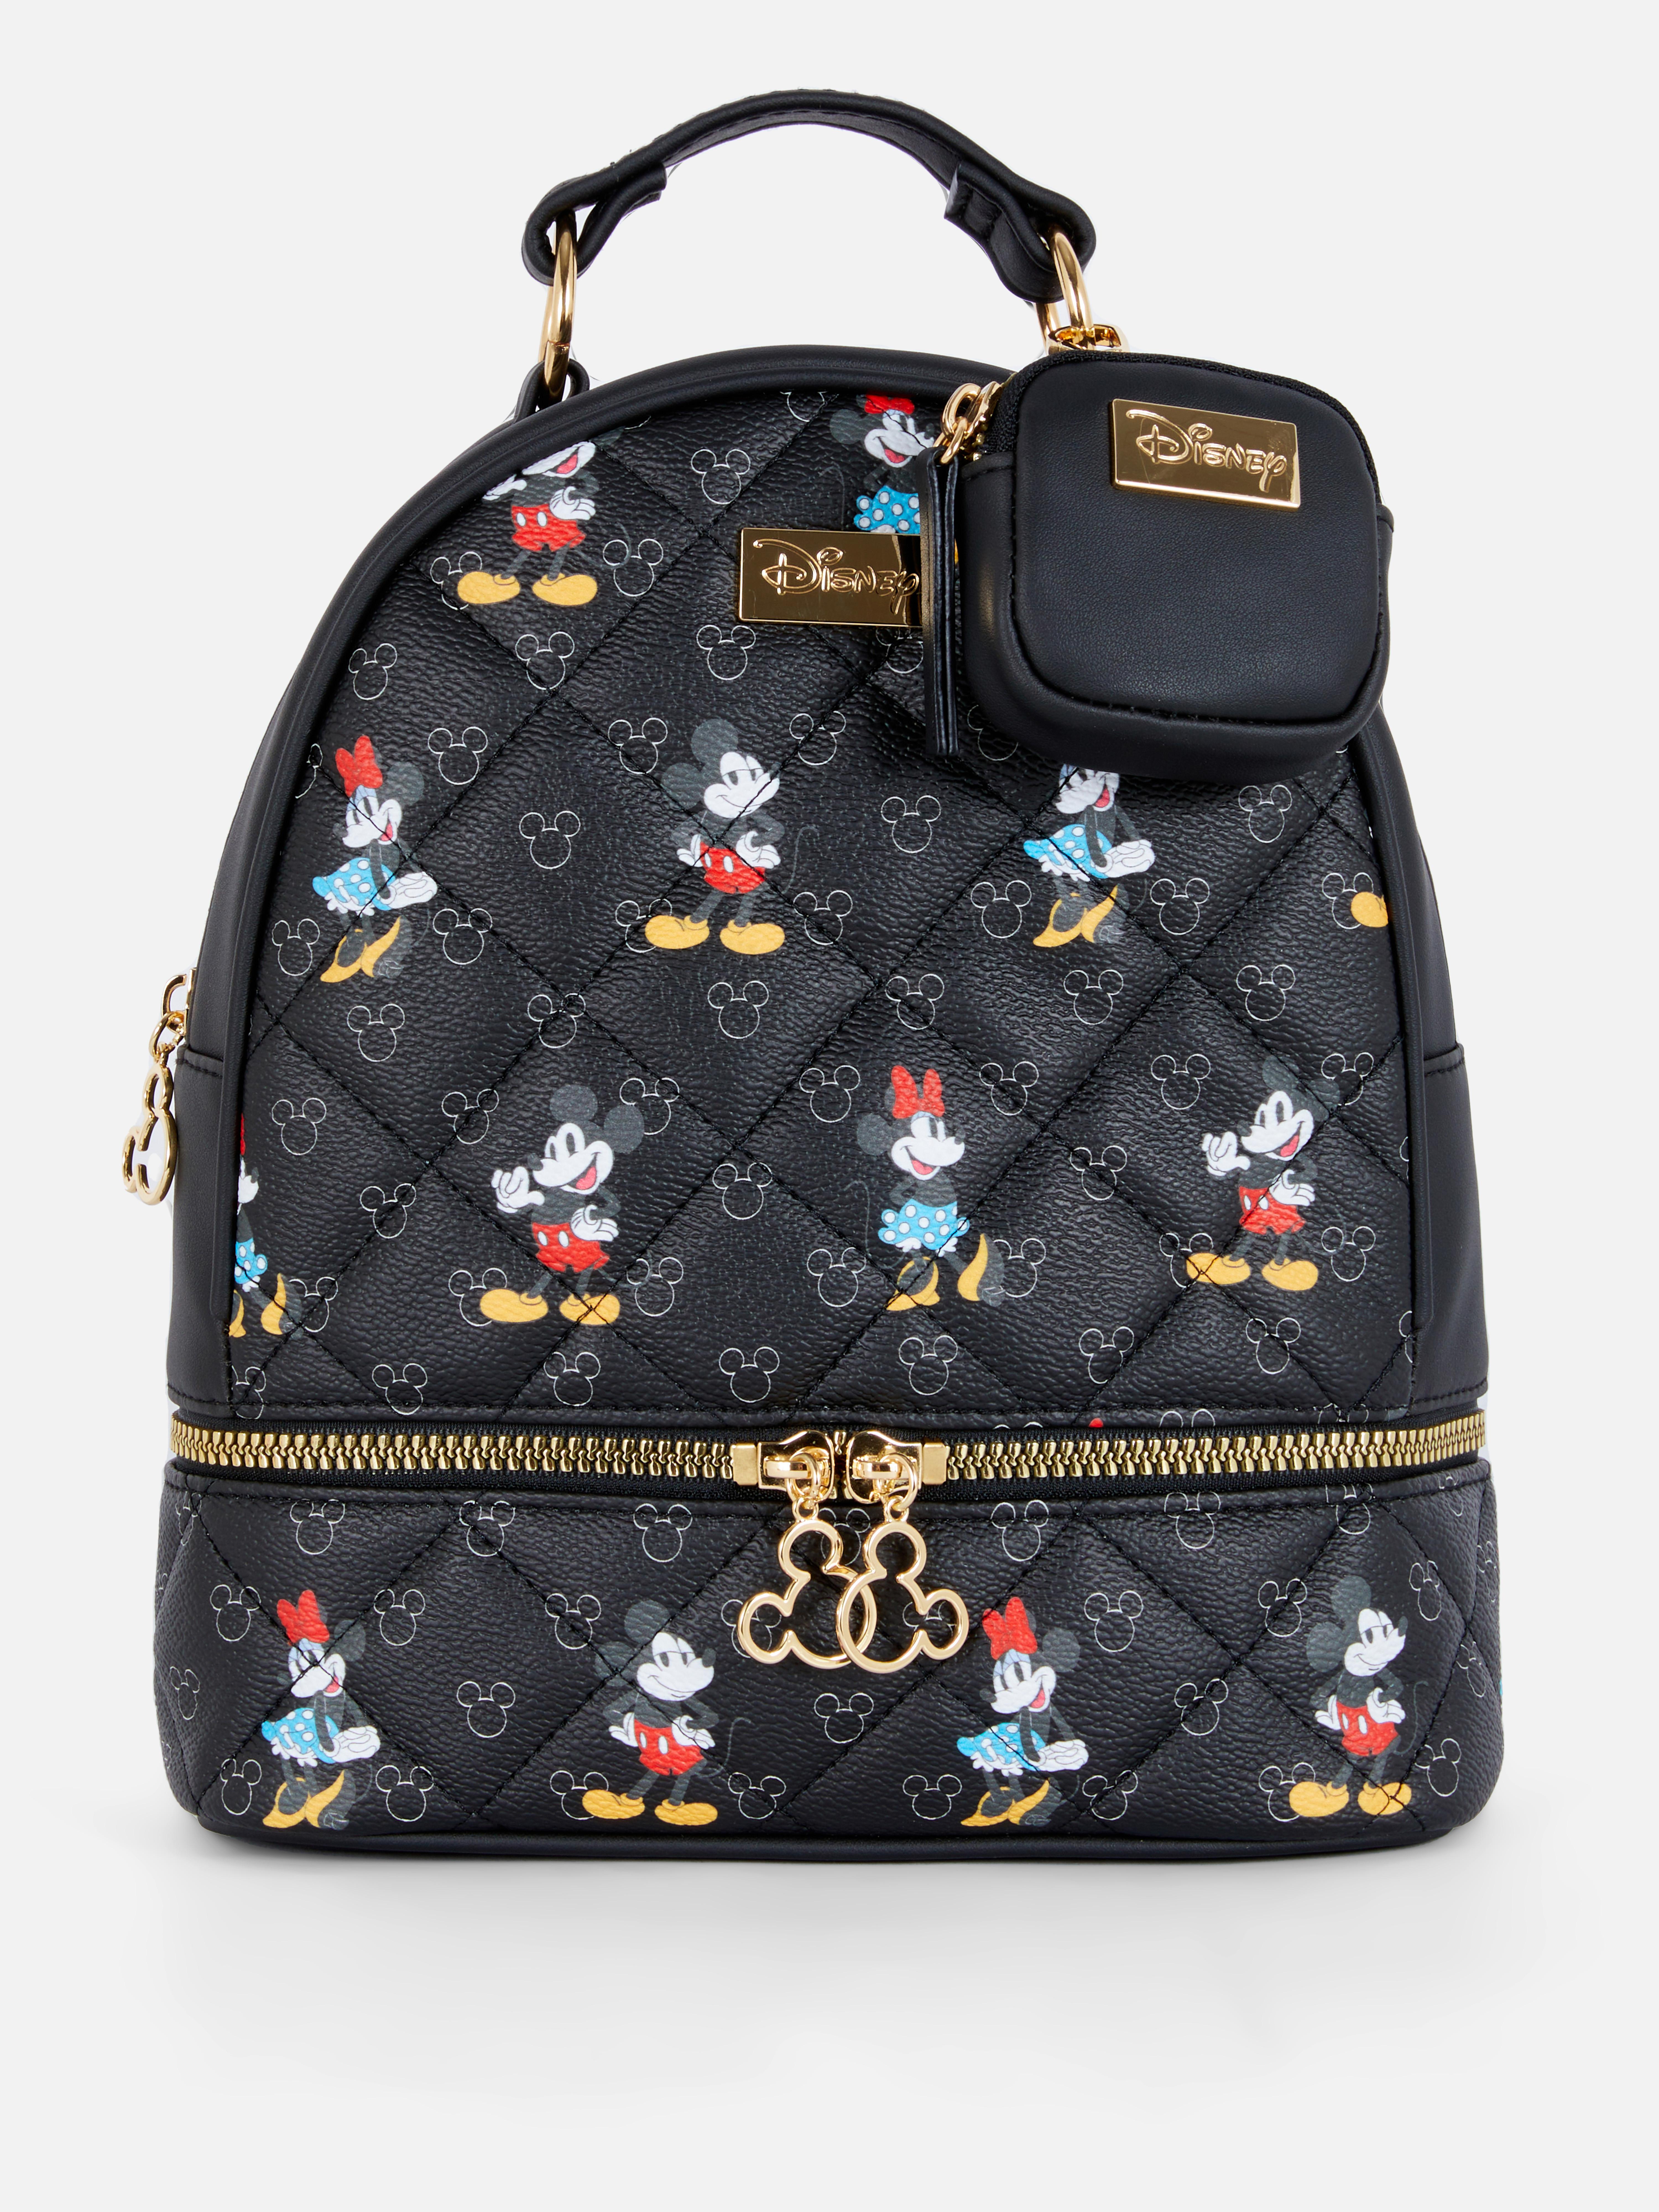 Mochila de Mickey y Minnie de Disney | Bolsos de mano para mujer | Accesorios de mujer Nuestra línea de moda femenina | Todos los productos Primark | Primark España